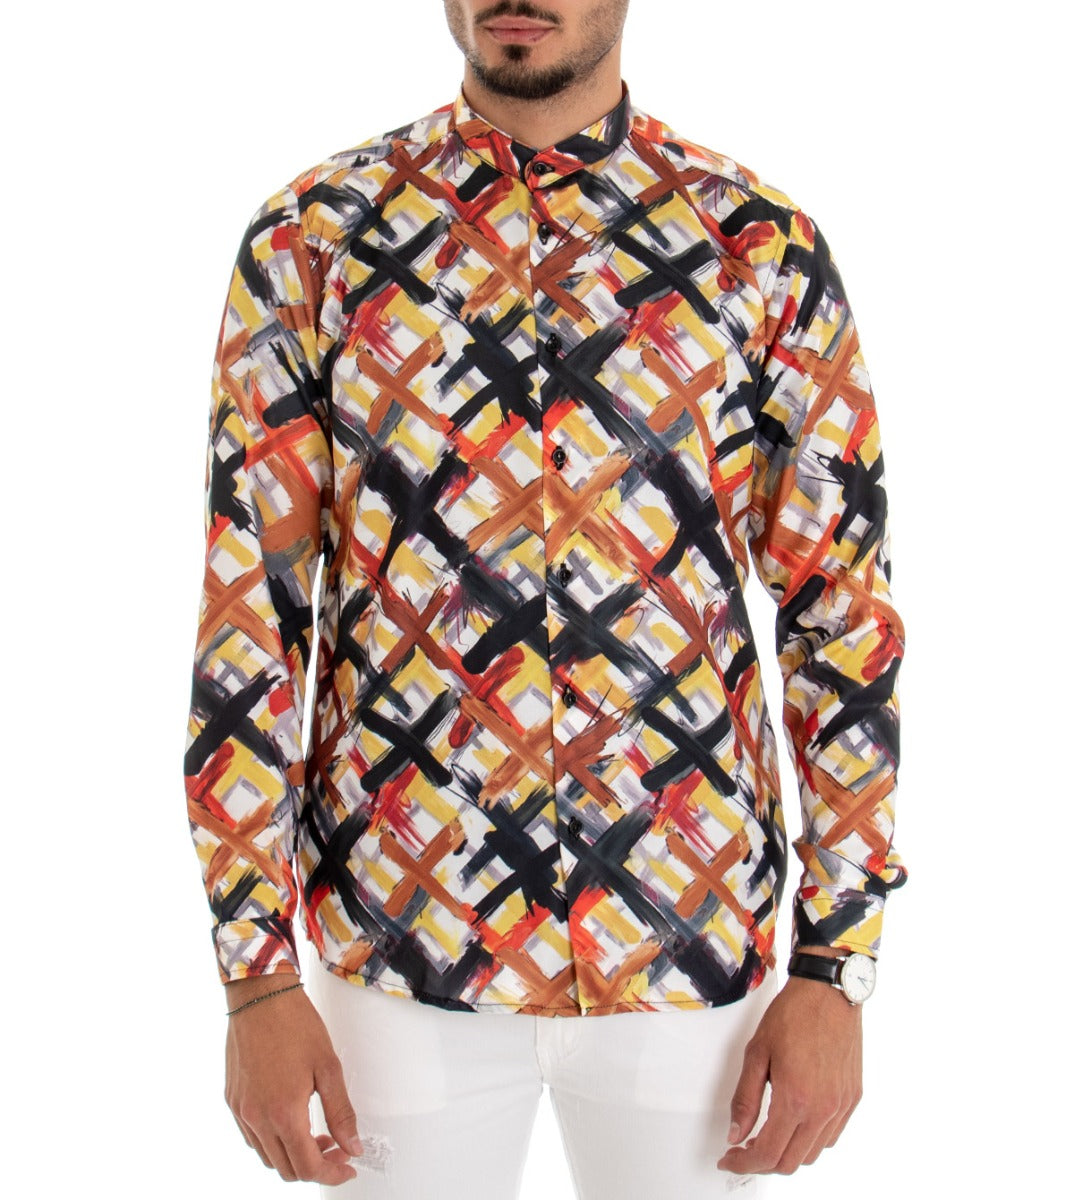 Camicia Uomo Collo Coreano Manica Lunga Cotone Viscosa Multicolore GIOSAL-C1674A